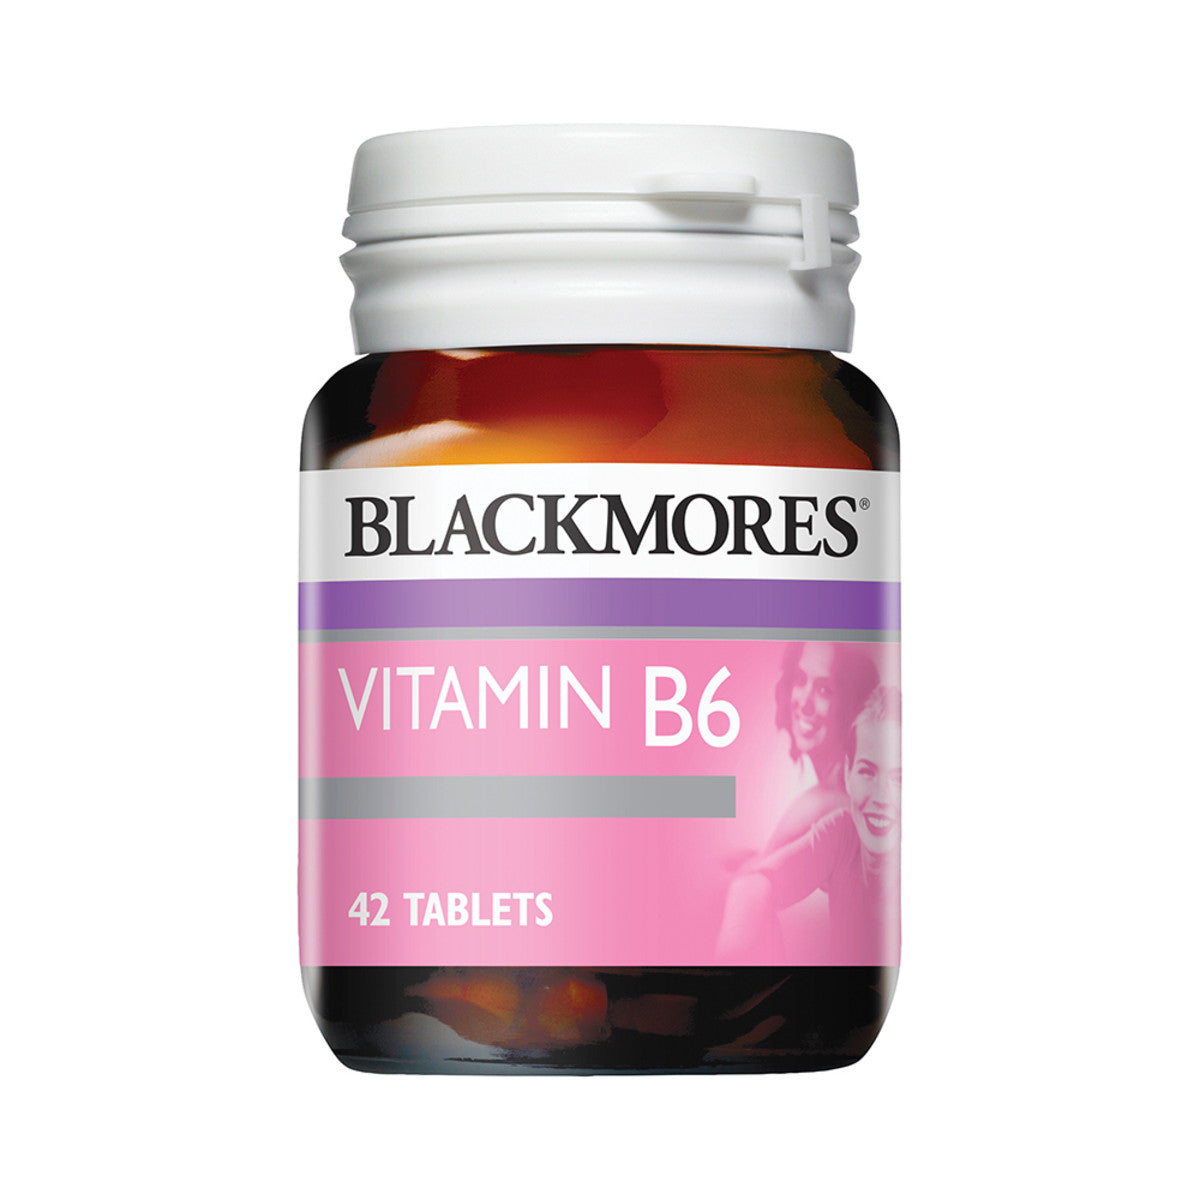 Blackmores - Vitamin B6 240mg